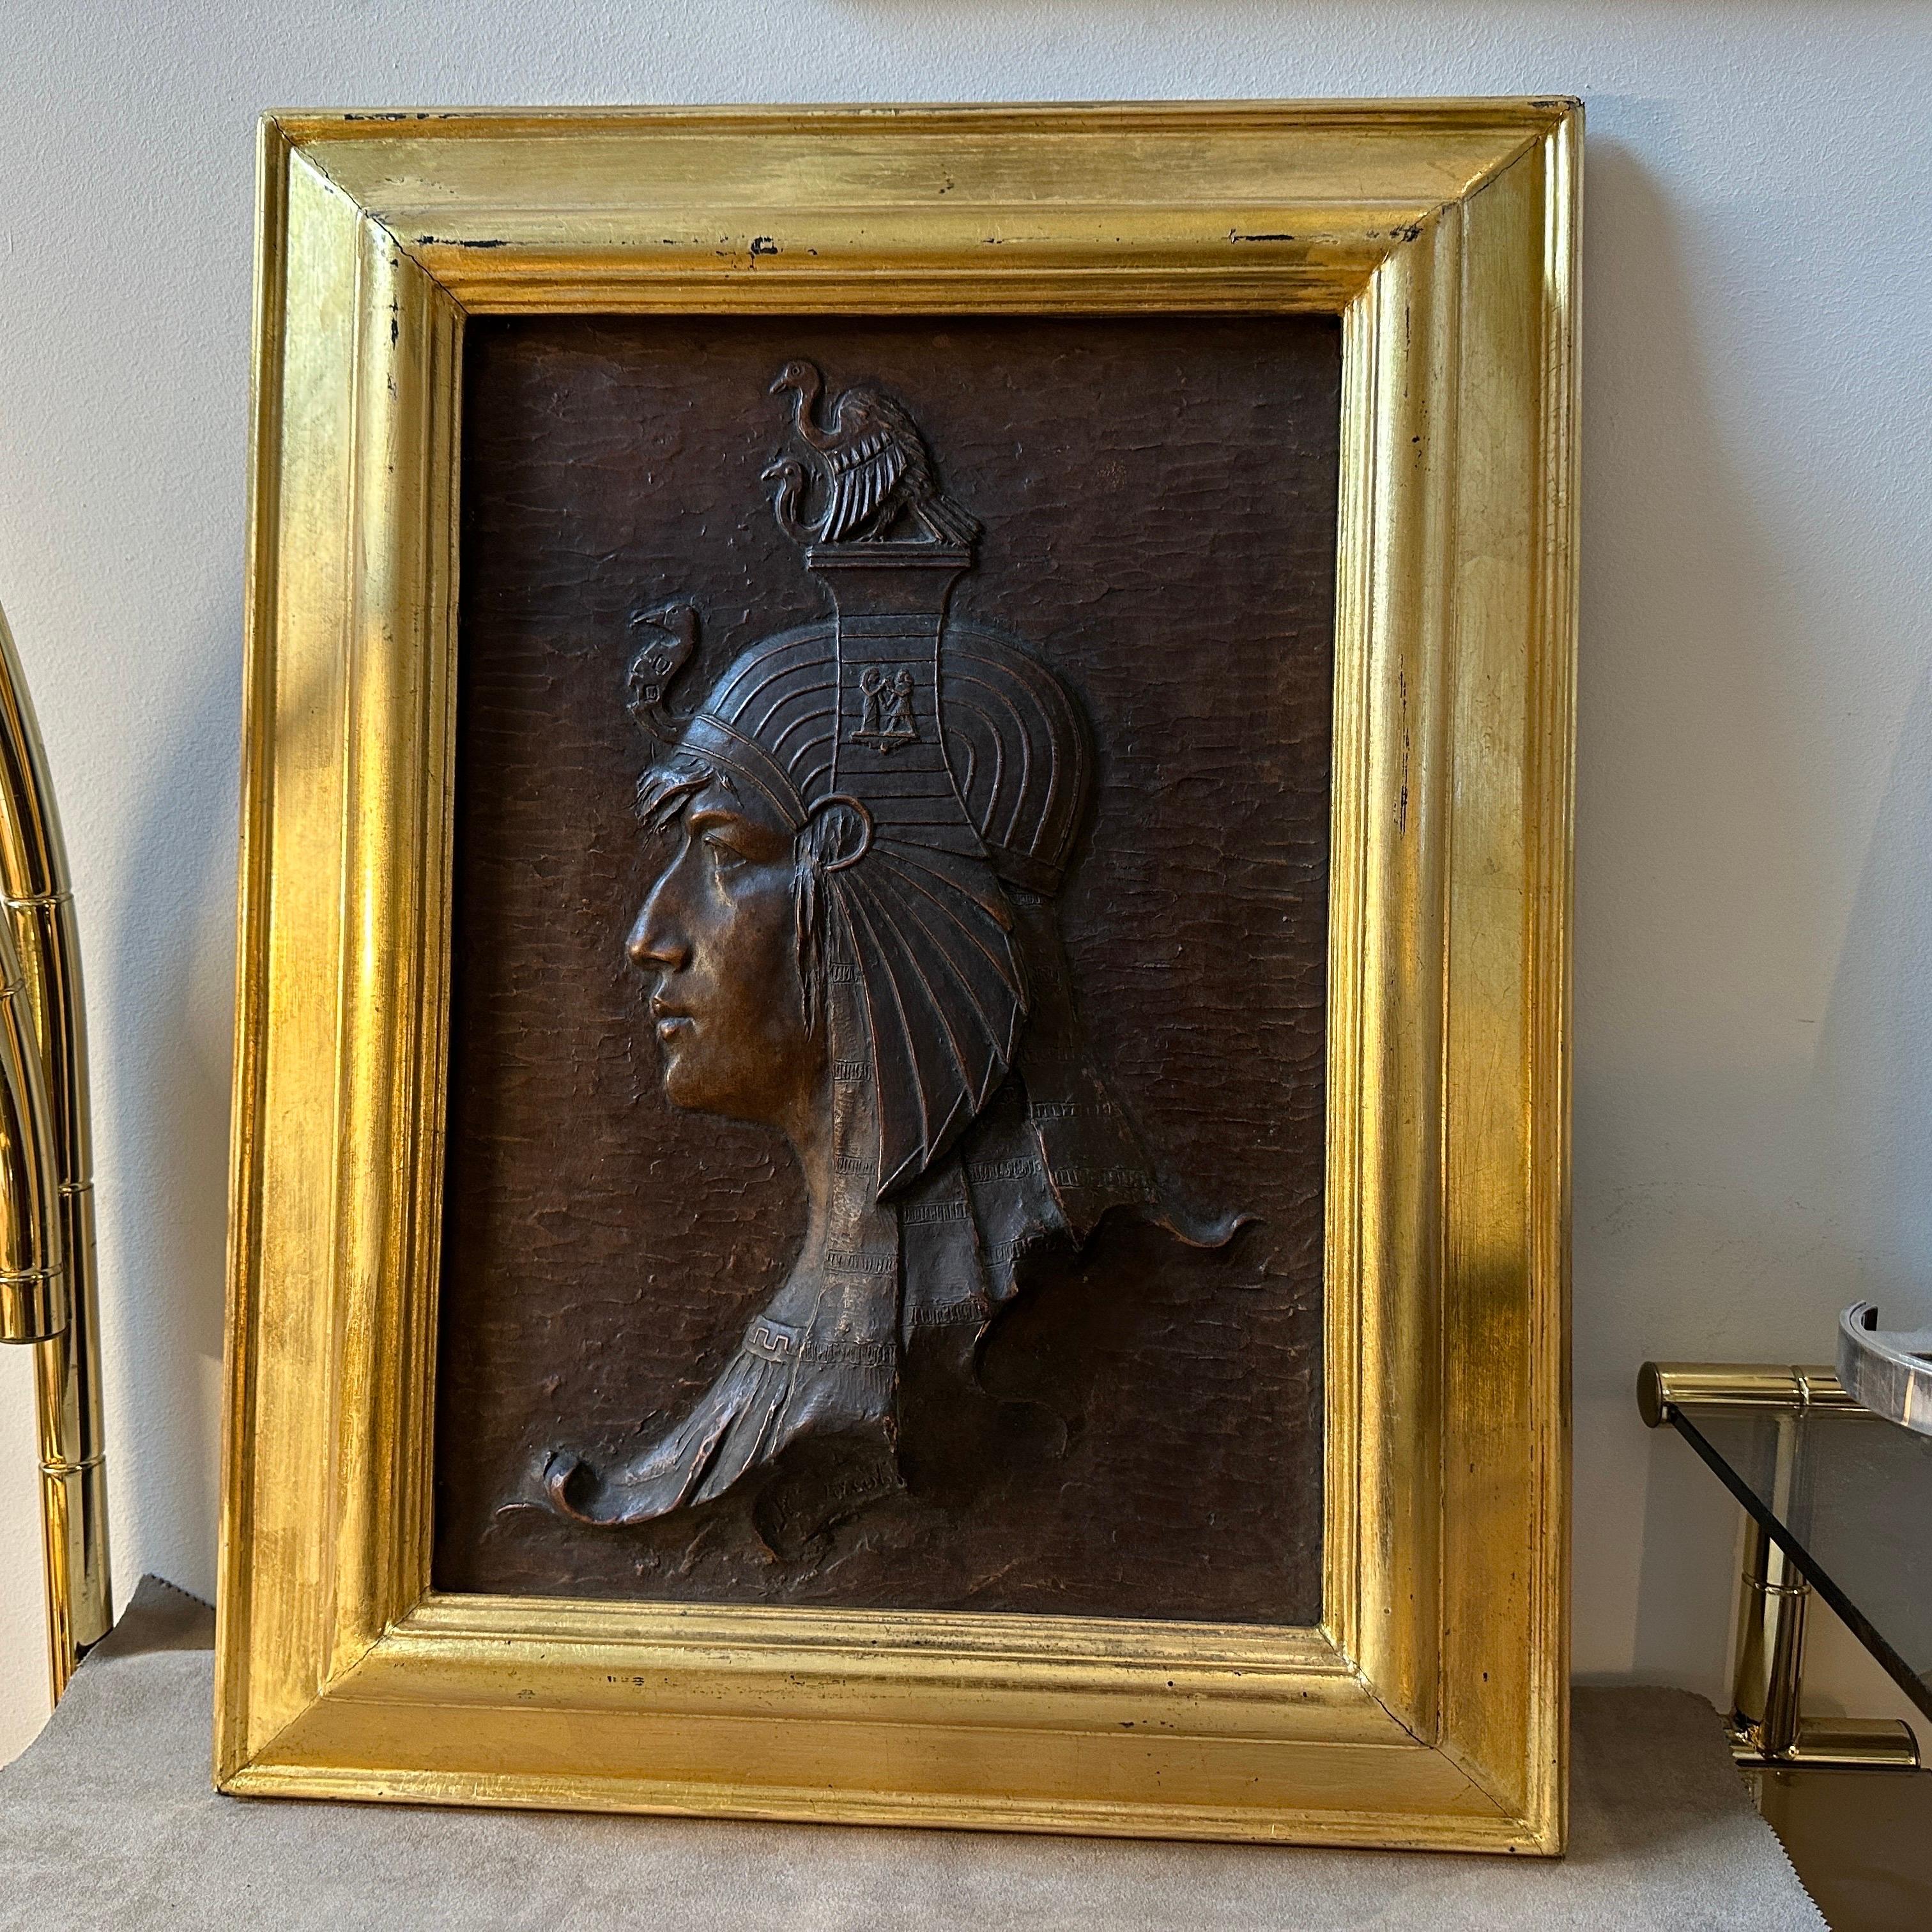 Un bas-relief en plâtre encadré de bois doré, représentant un Égyptien antique, fabriqué à la main en Italie dans les années trente, qui représente une fusion étonnante d'influences artistiques et de savoir-faire du début du XXe siècle. Cette pièce